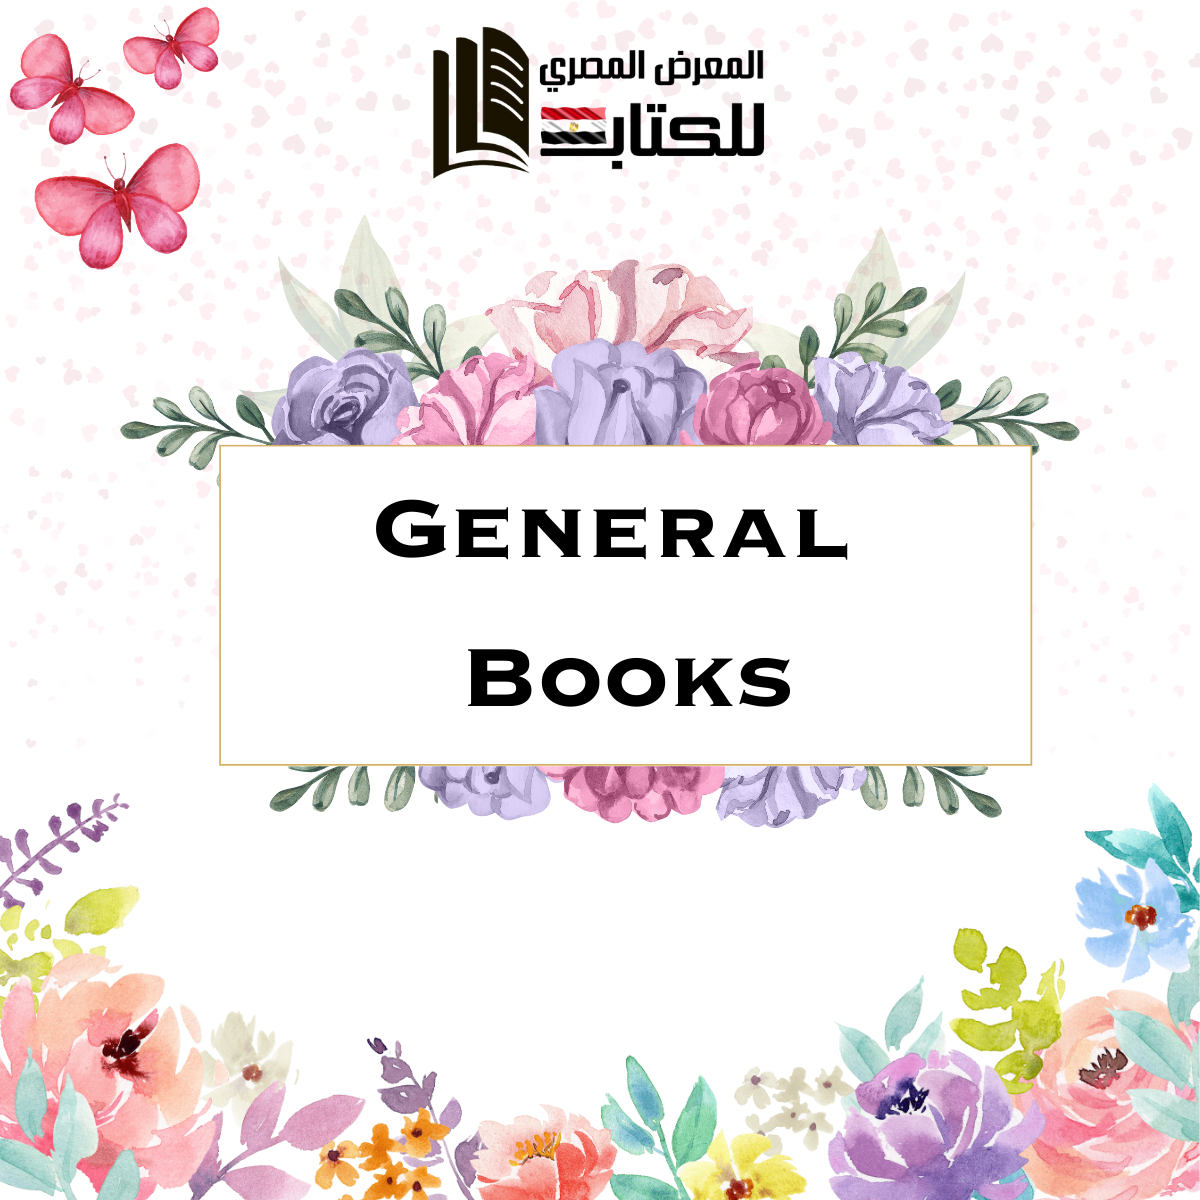 General Books.png__PID:350465ad-7fb1-4eba-8d99-d255394f9eaf